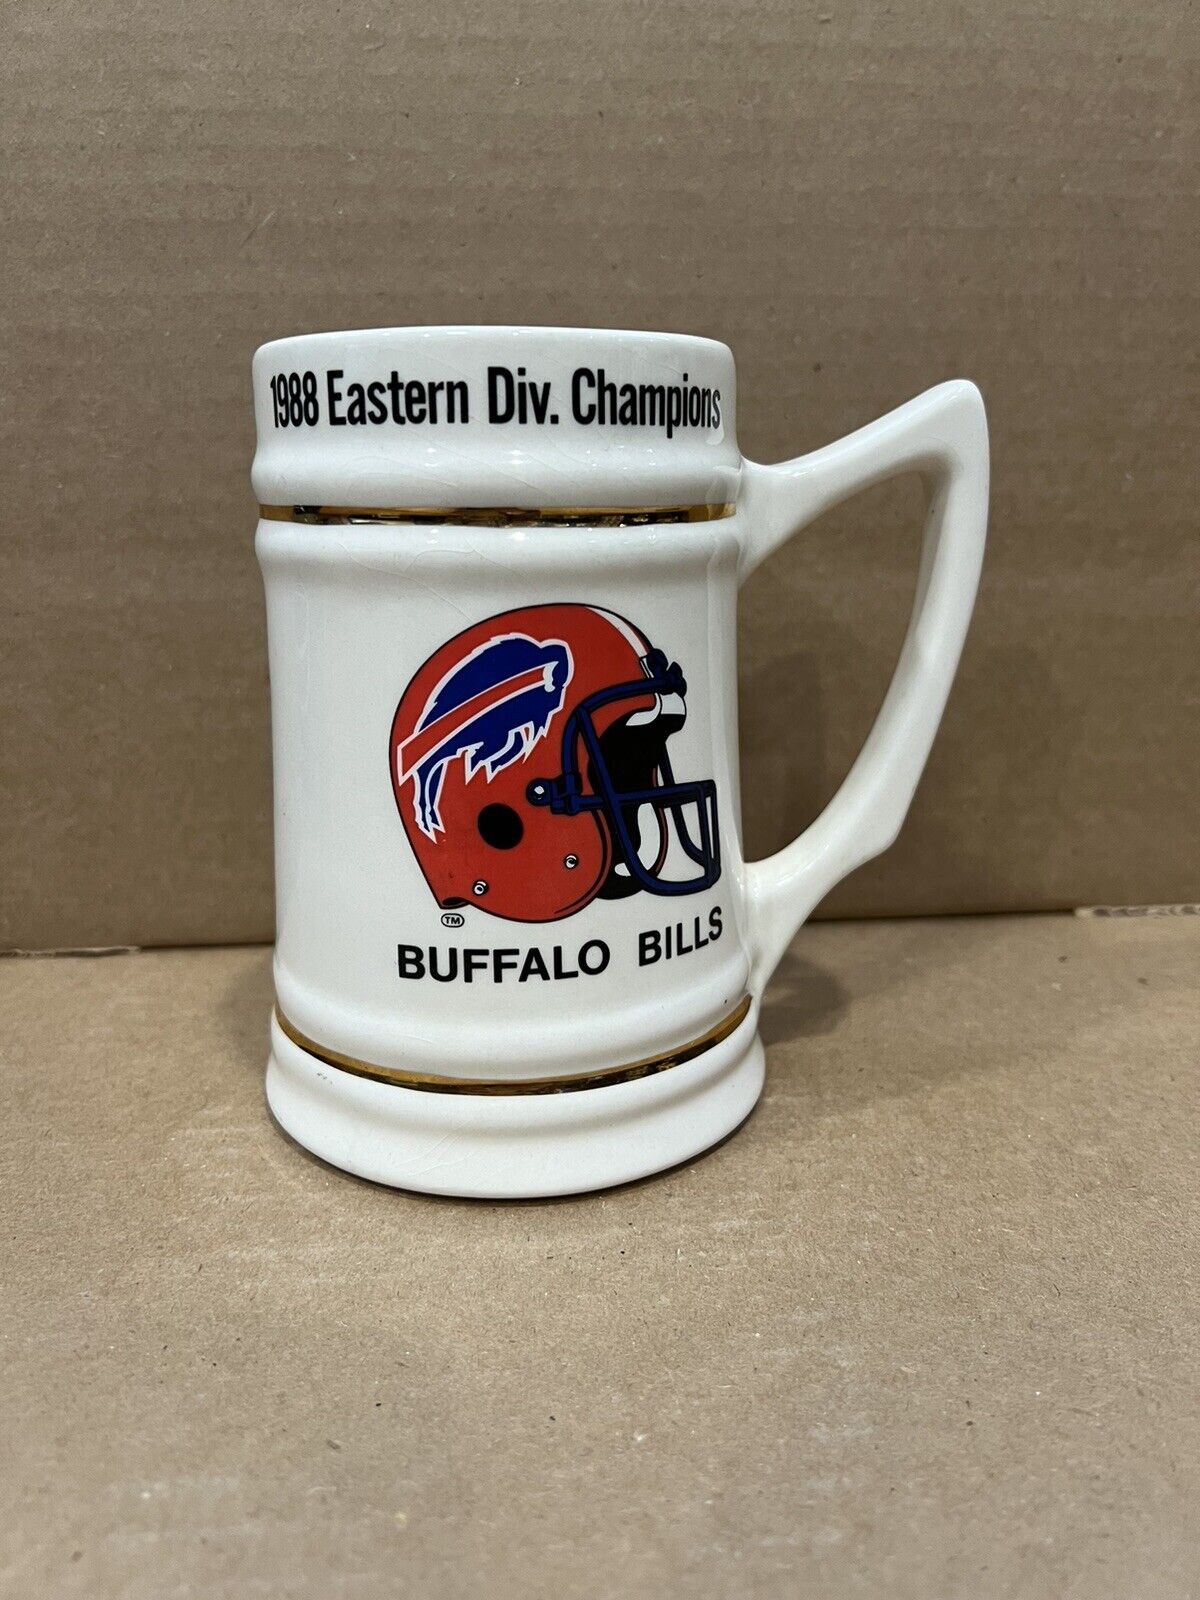 Buffalo Bills 1988 Eastern Division Champions Mug